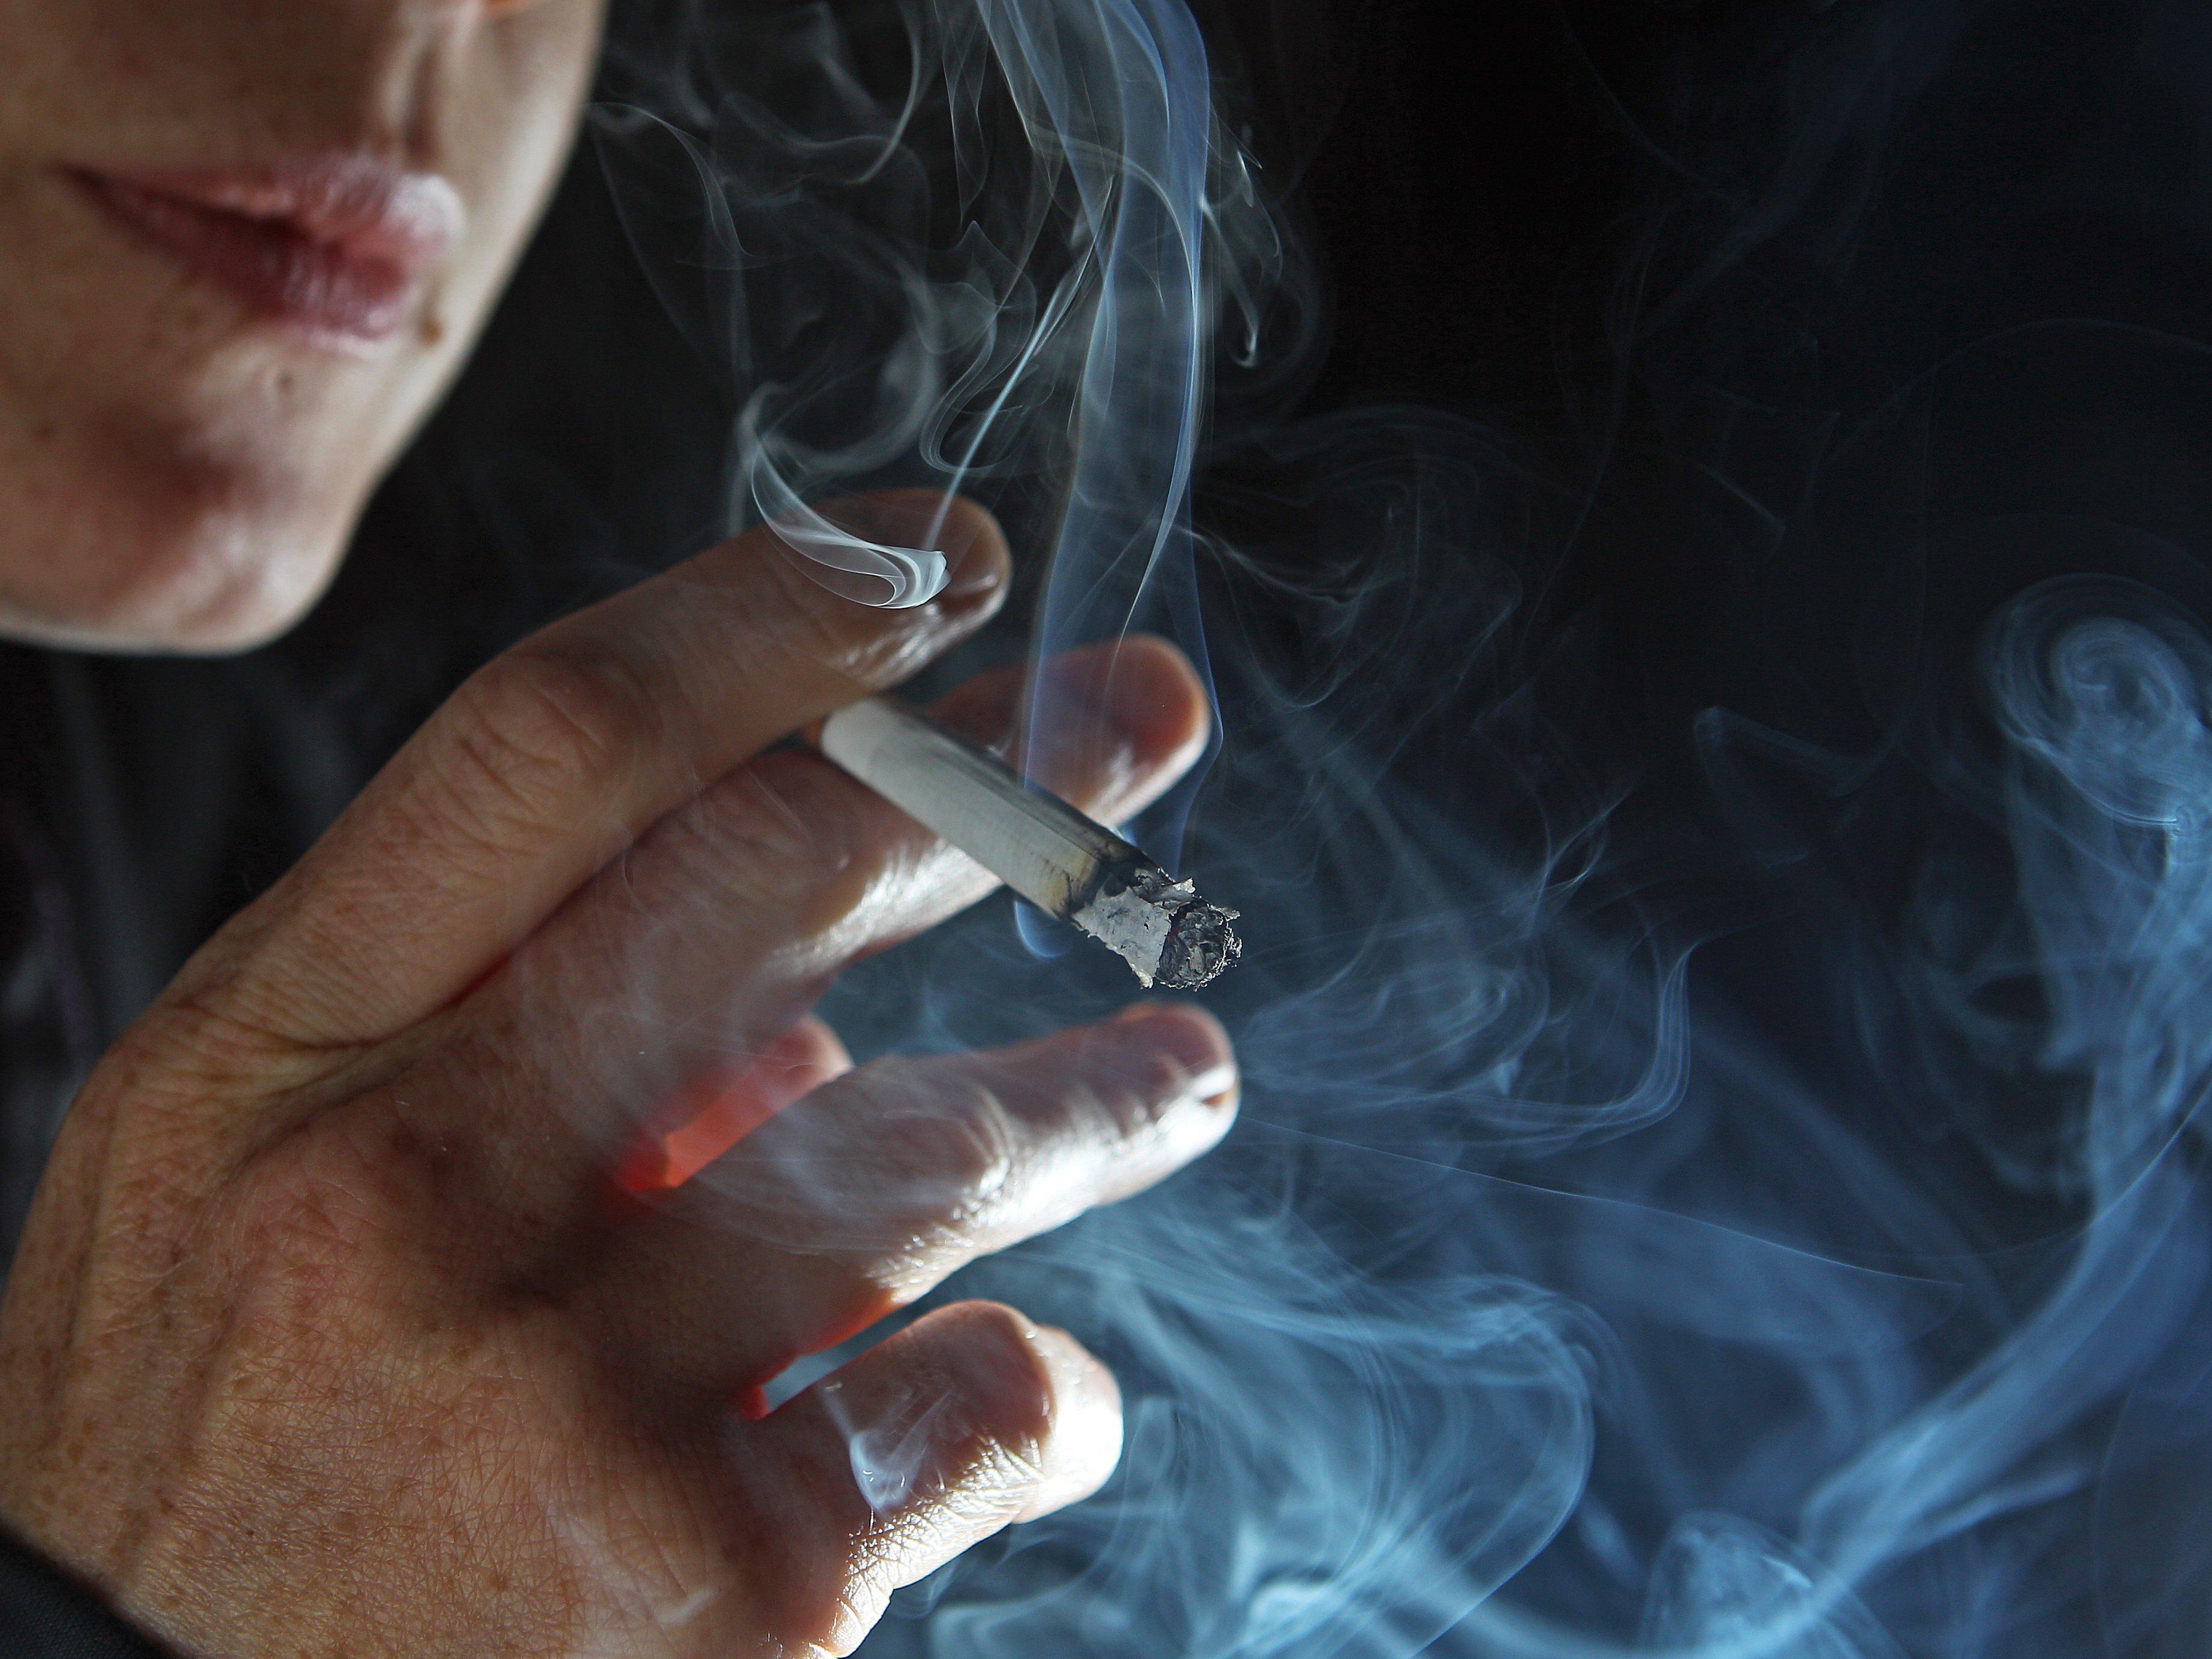 Kinder von Rauchern zeigen laut Studie doppelt so oft Verhaltensstörungen.